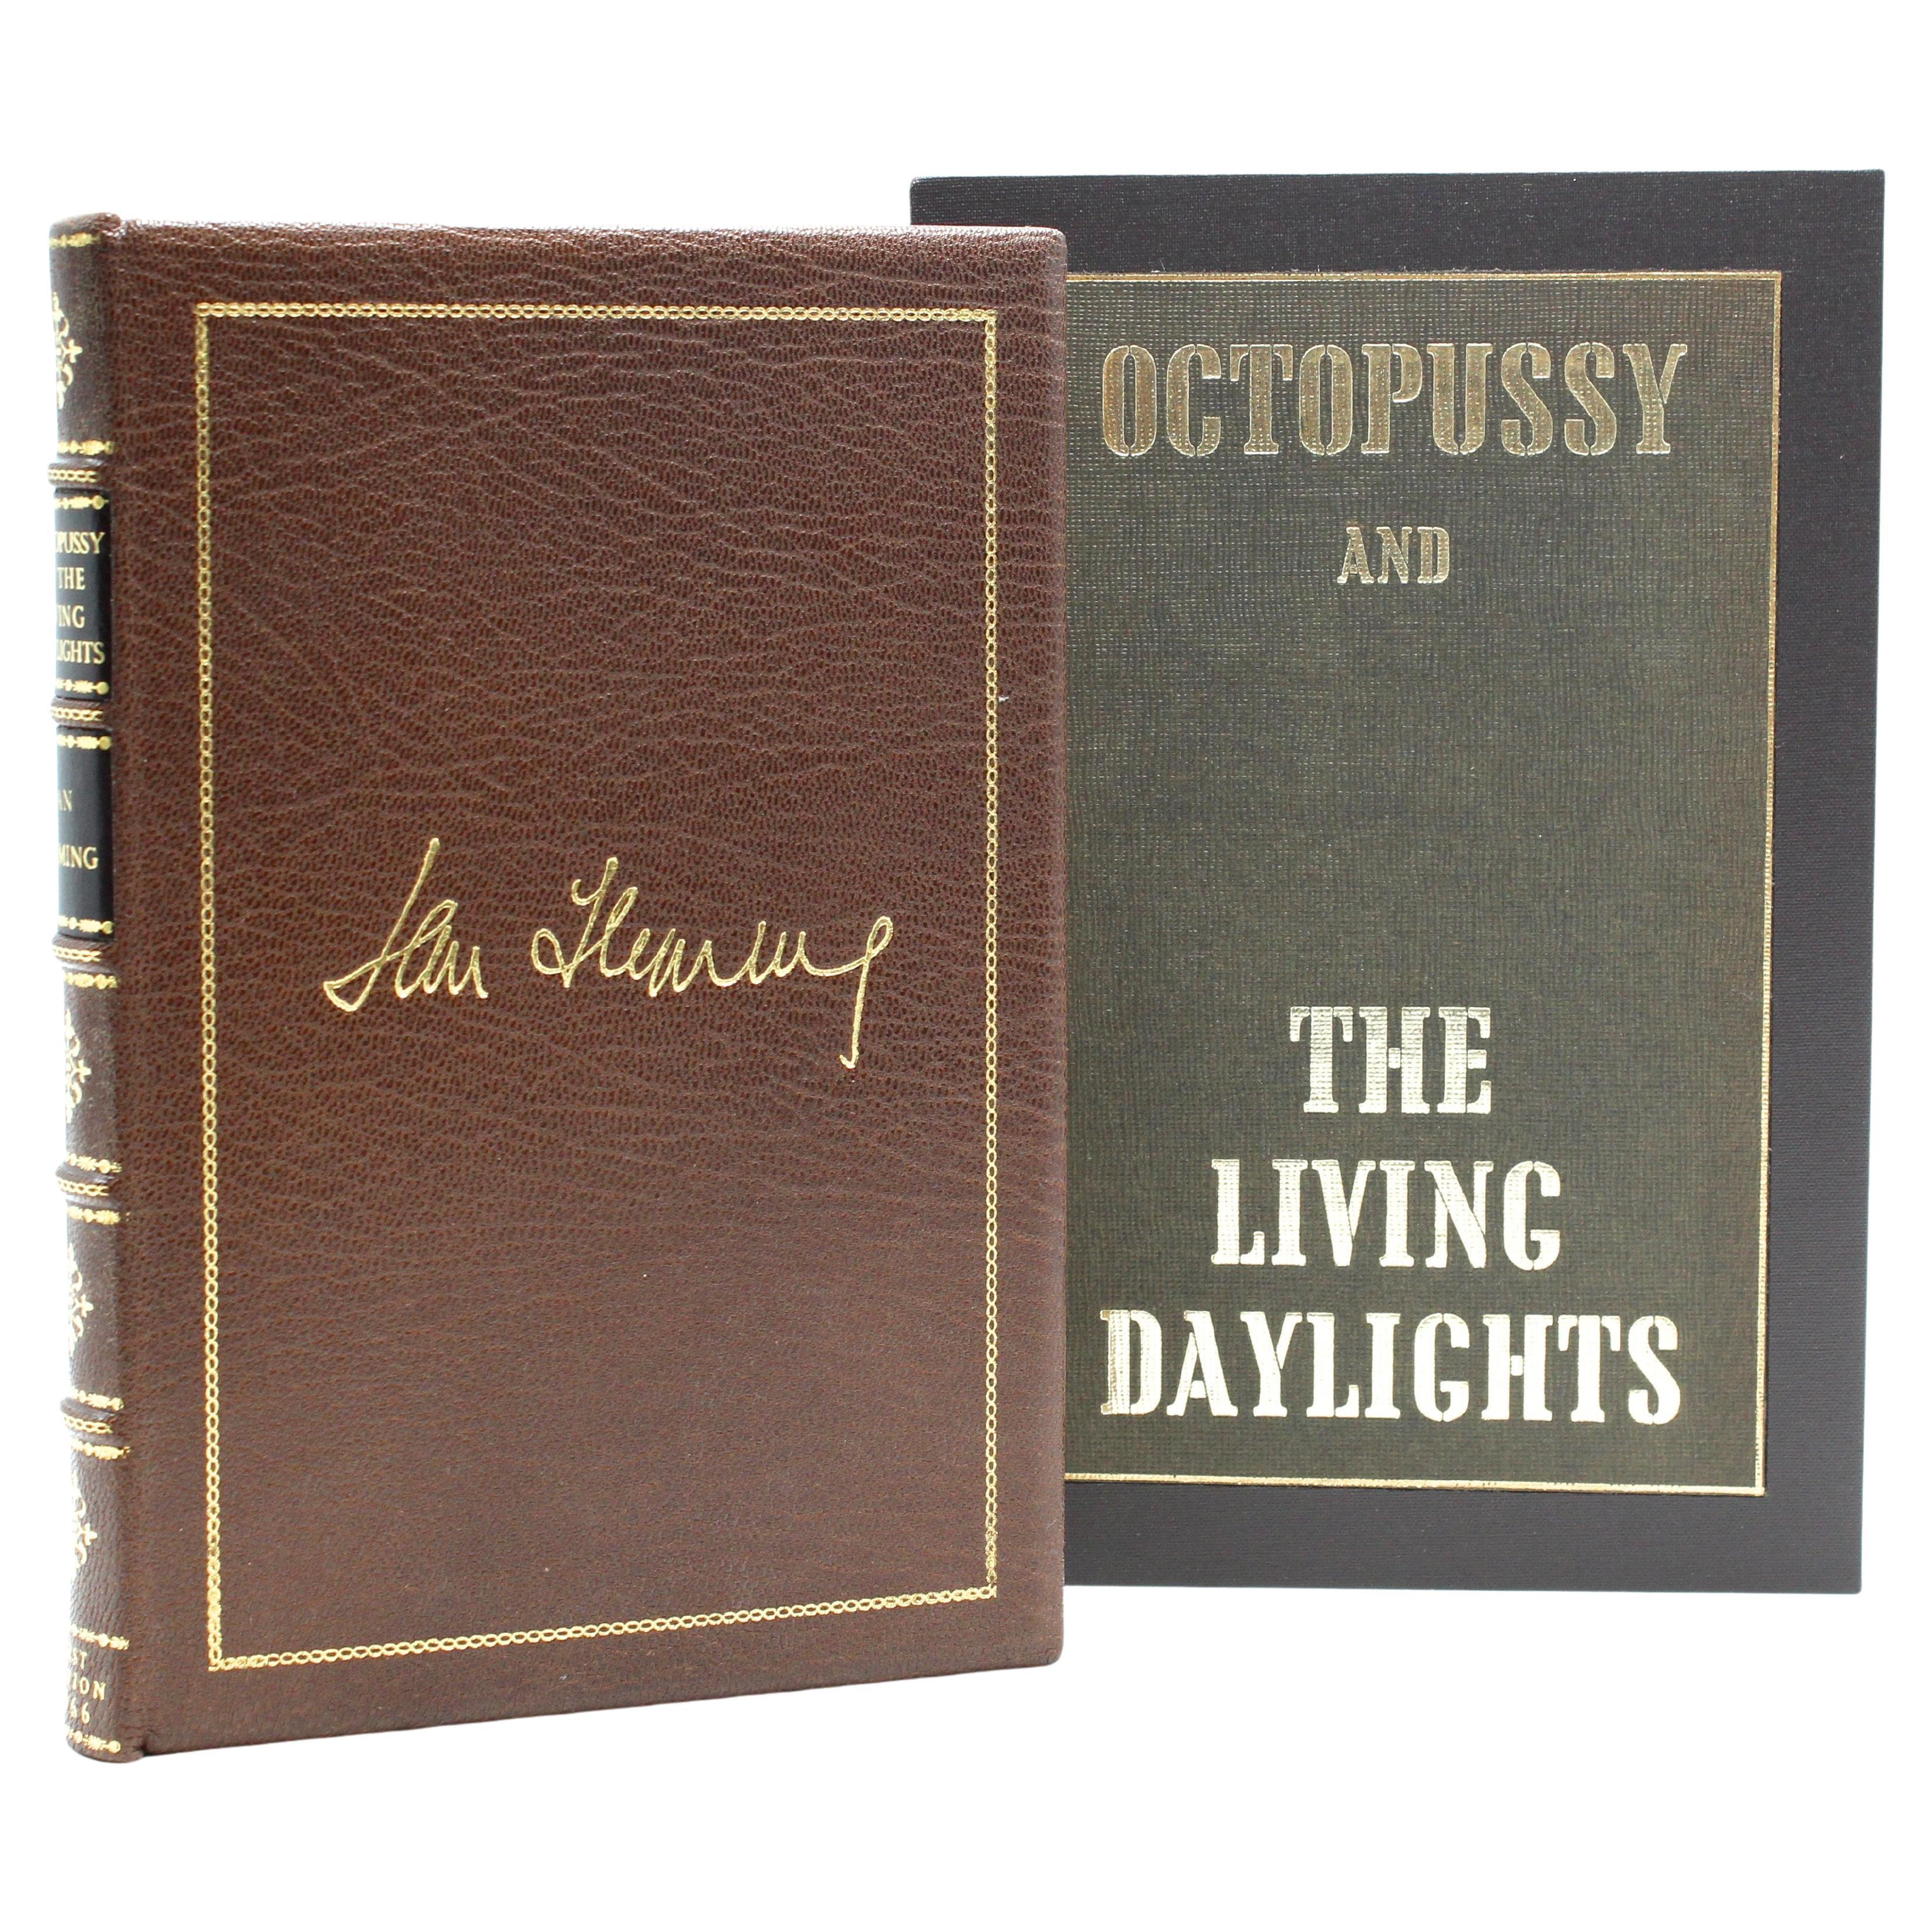 Octopussy and The Living Daylights von Ian Fleming, Erstausgabe im Vereinigten Königreich, 1966